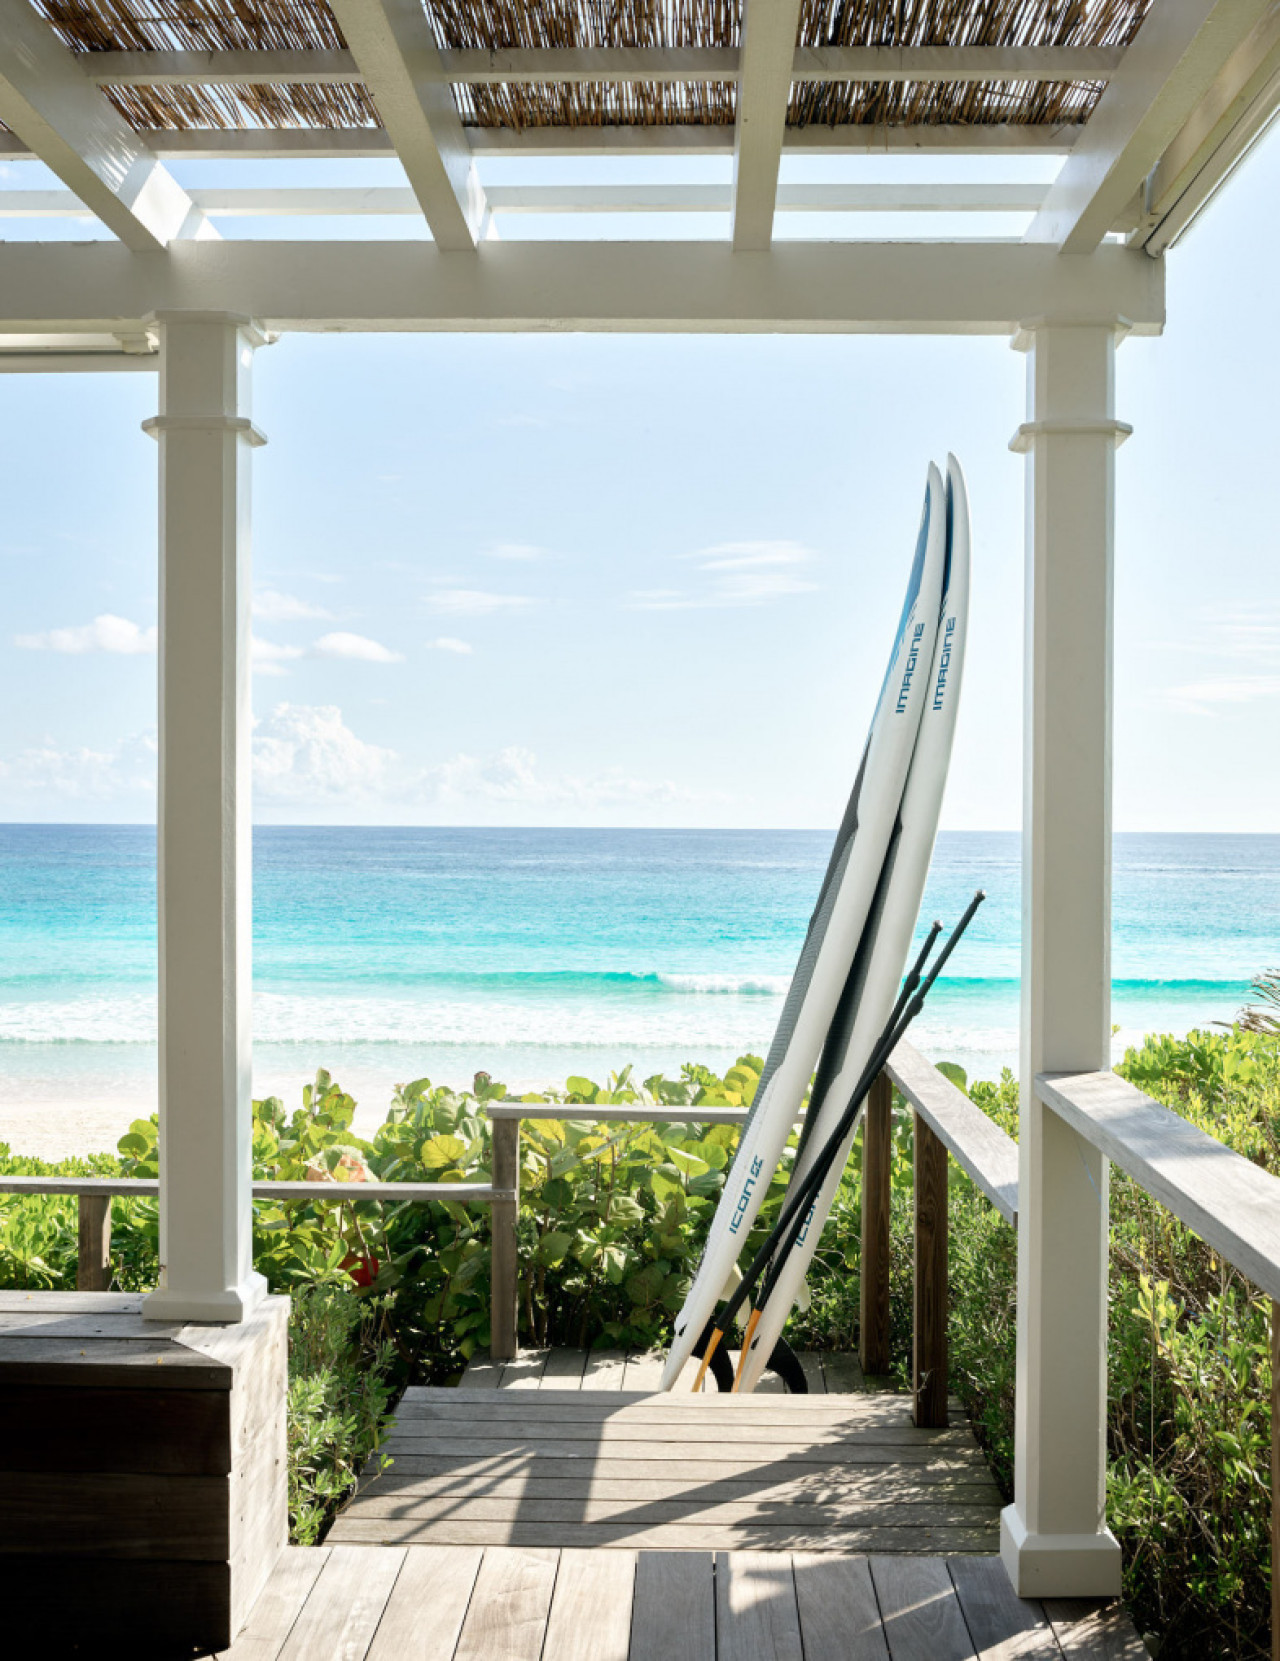 La lujosa mansión que alquiló Taylor Swift en las Bahamas. Foto rosalitahouse.com